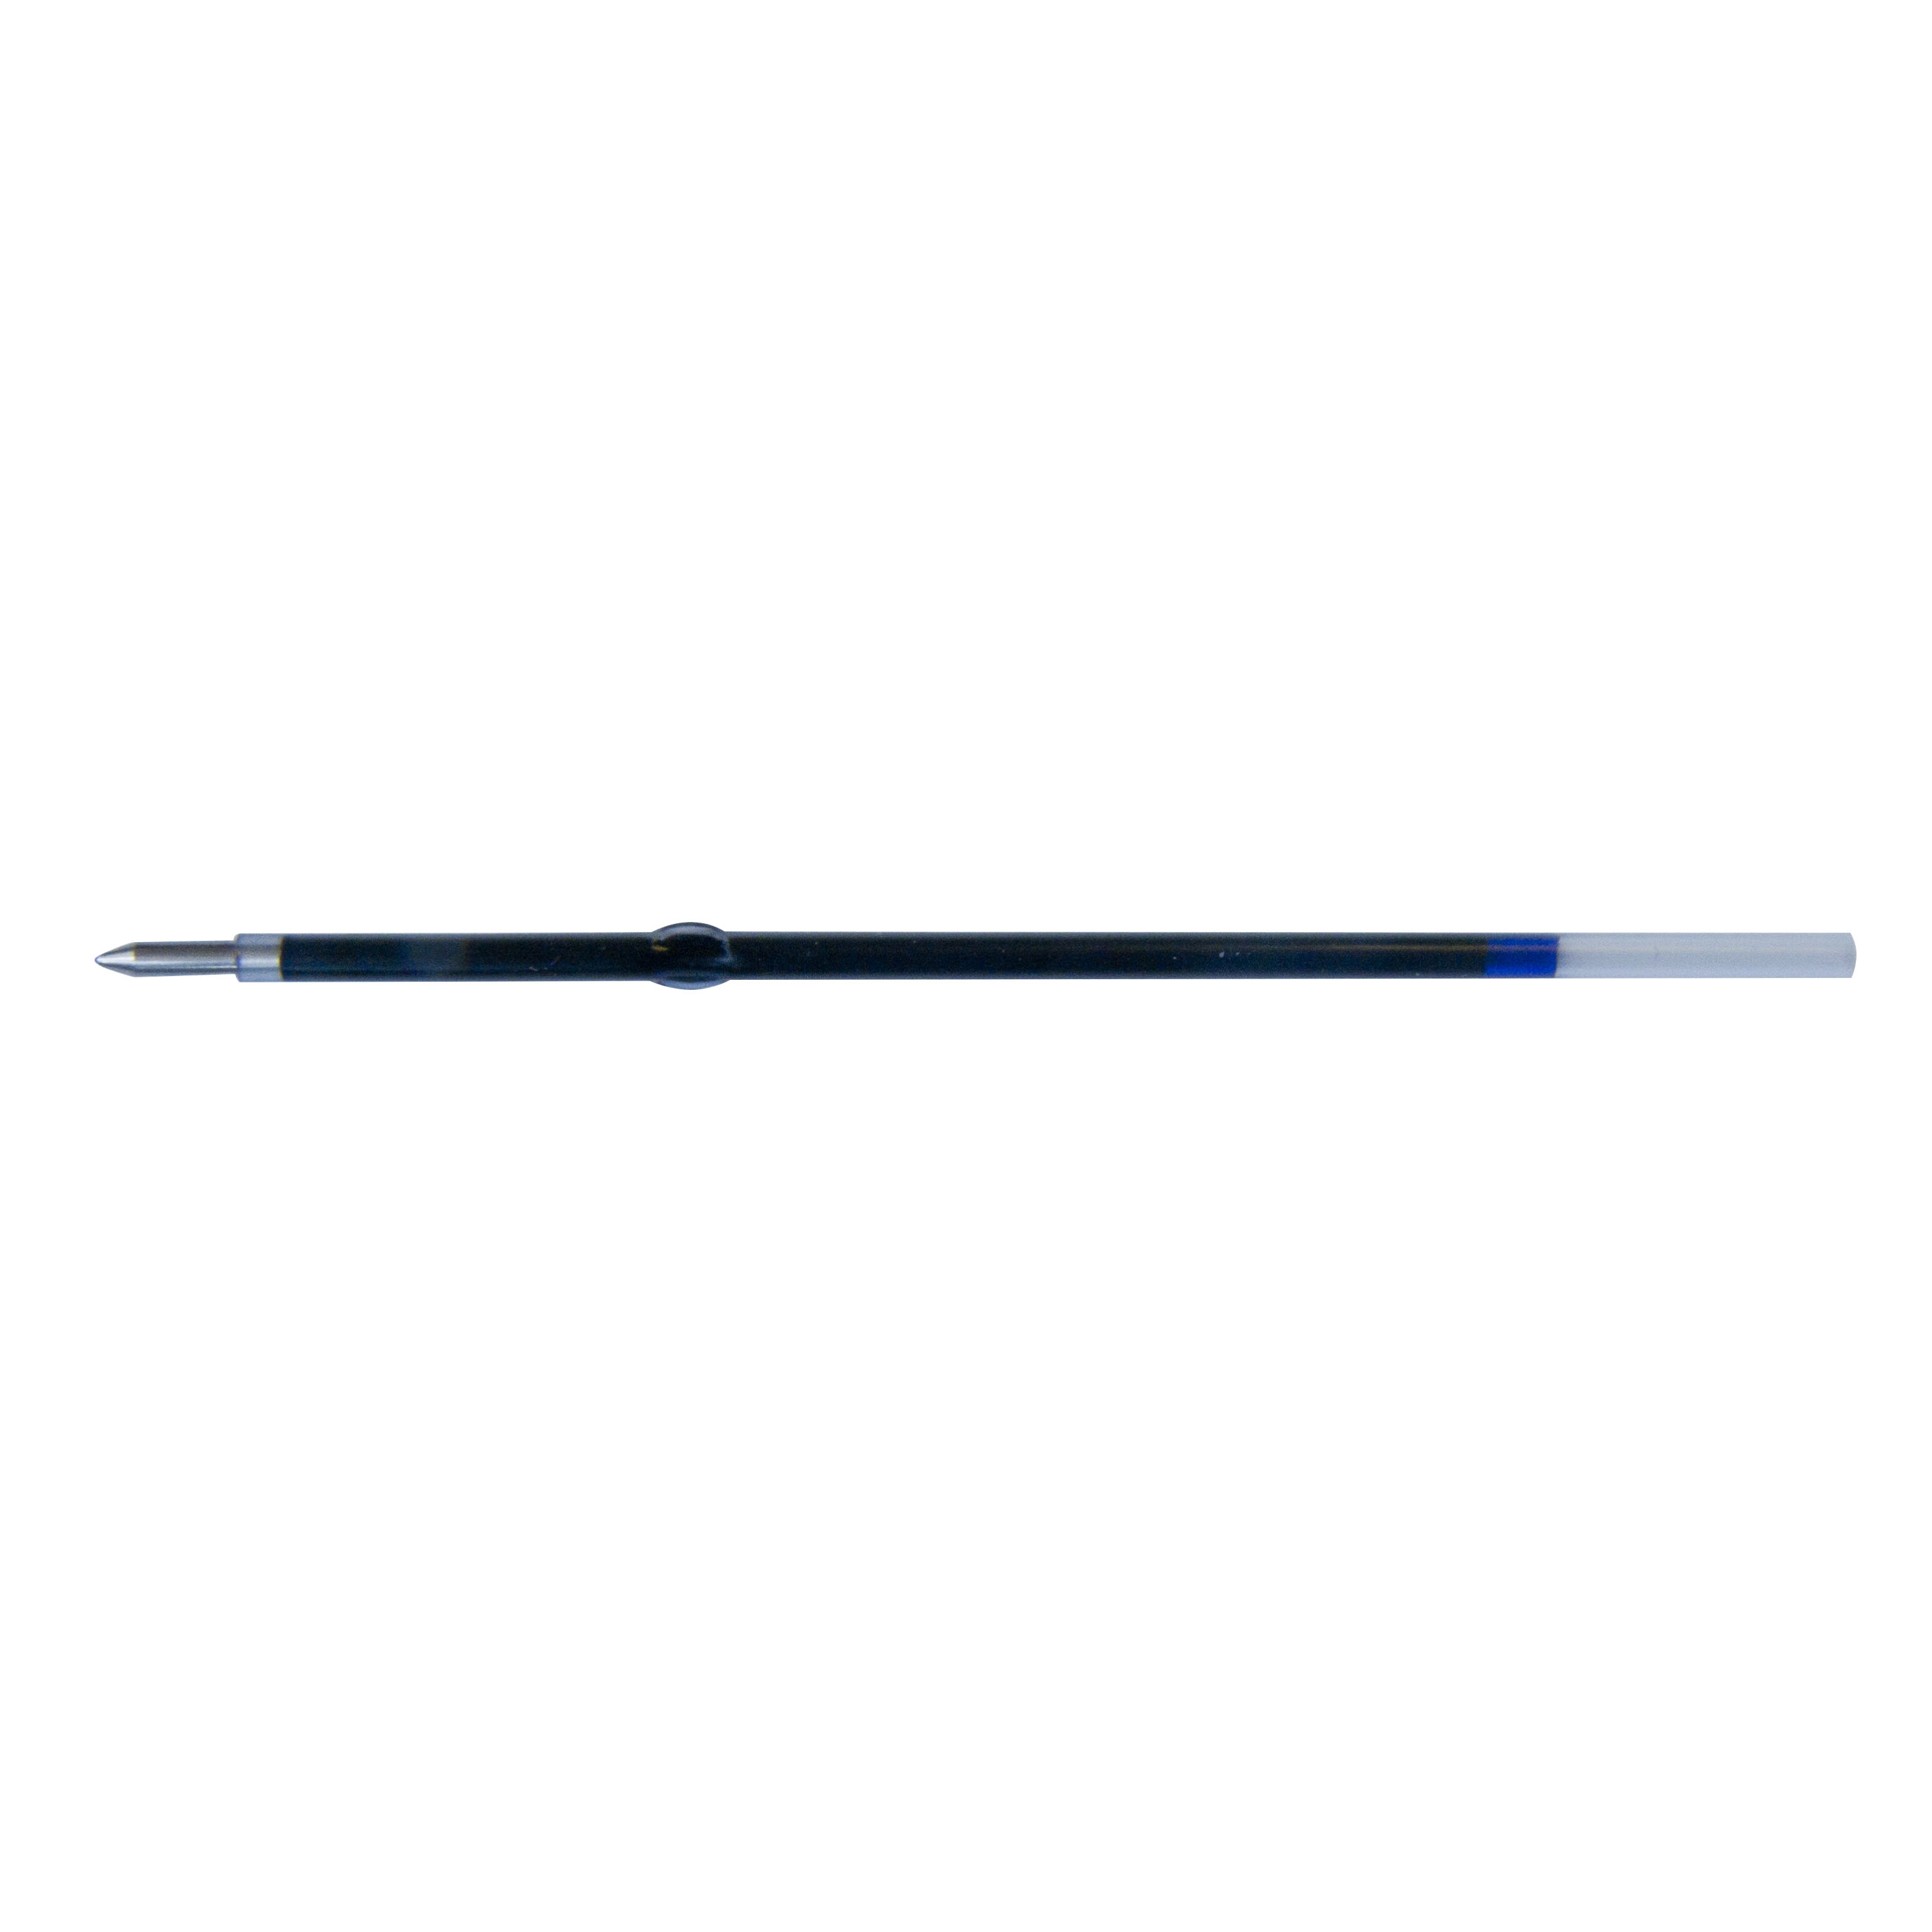 Náplň X20 do kuličkového pera Spoko 0,5 mm, modrá, 6ks